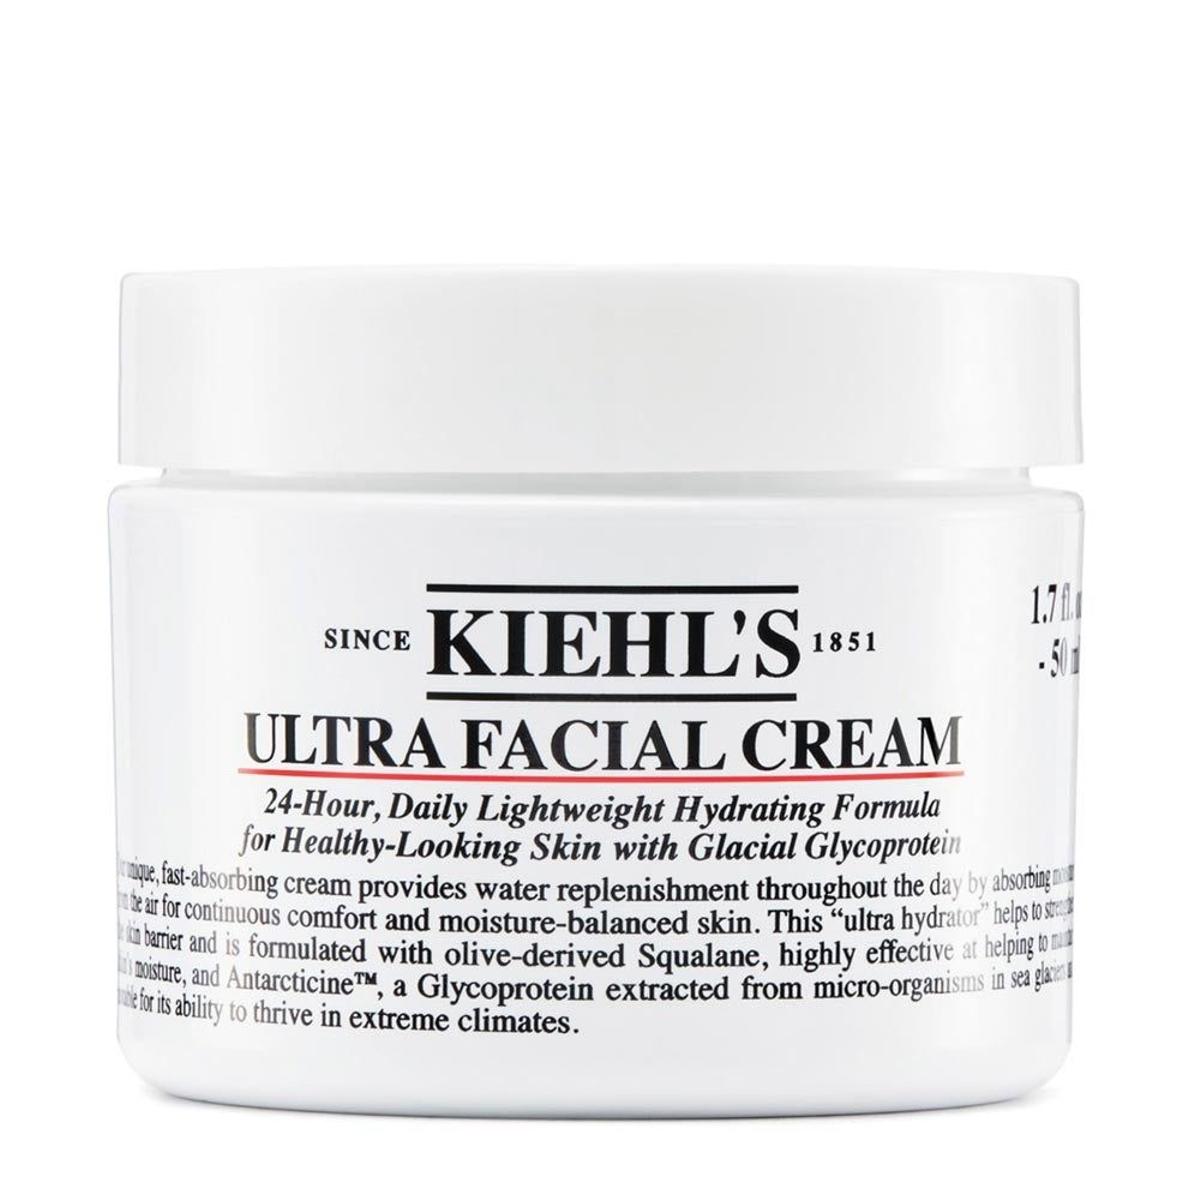 Ultra Facial Cream de Kiehl's. (Precio: 27 euros / 50 ml)